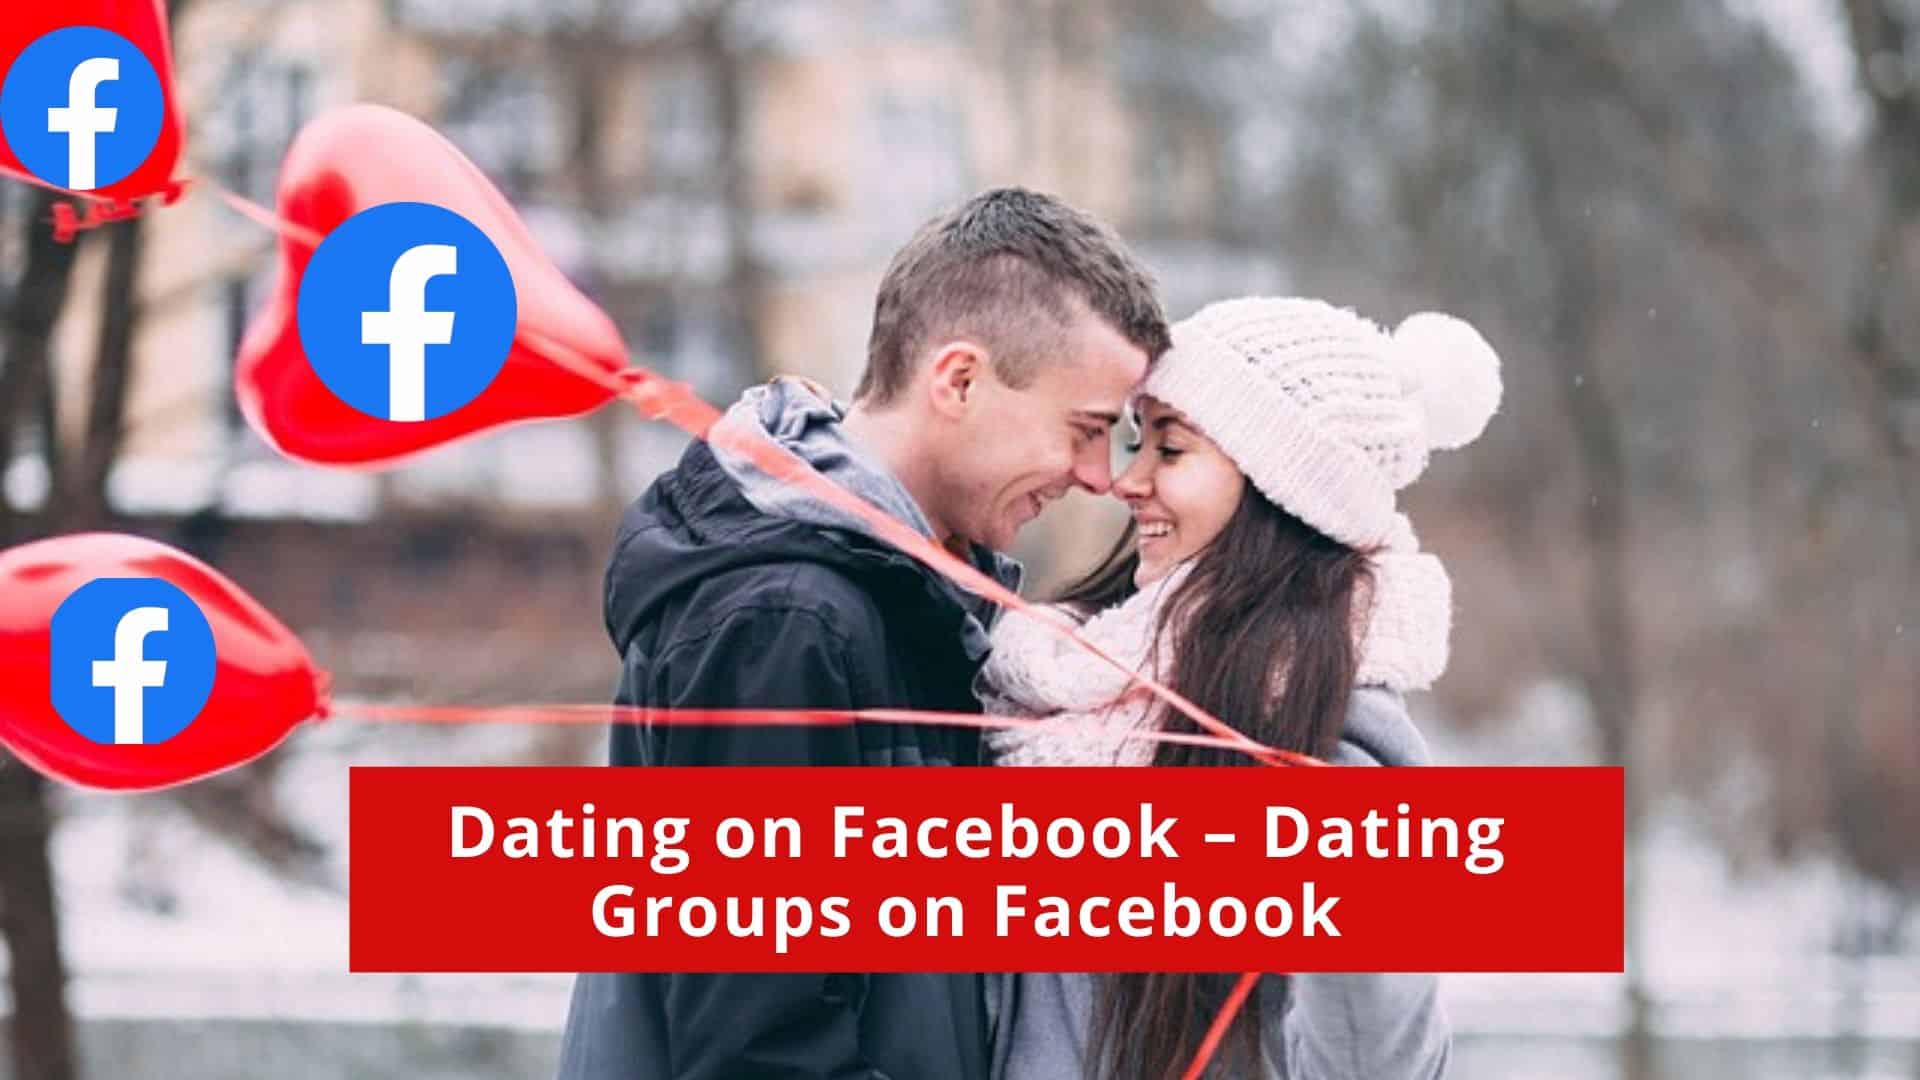 Christian dating groups großartige stromschnellen mi